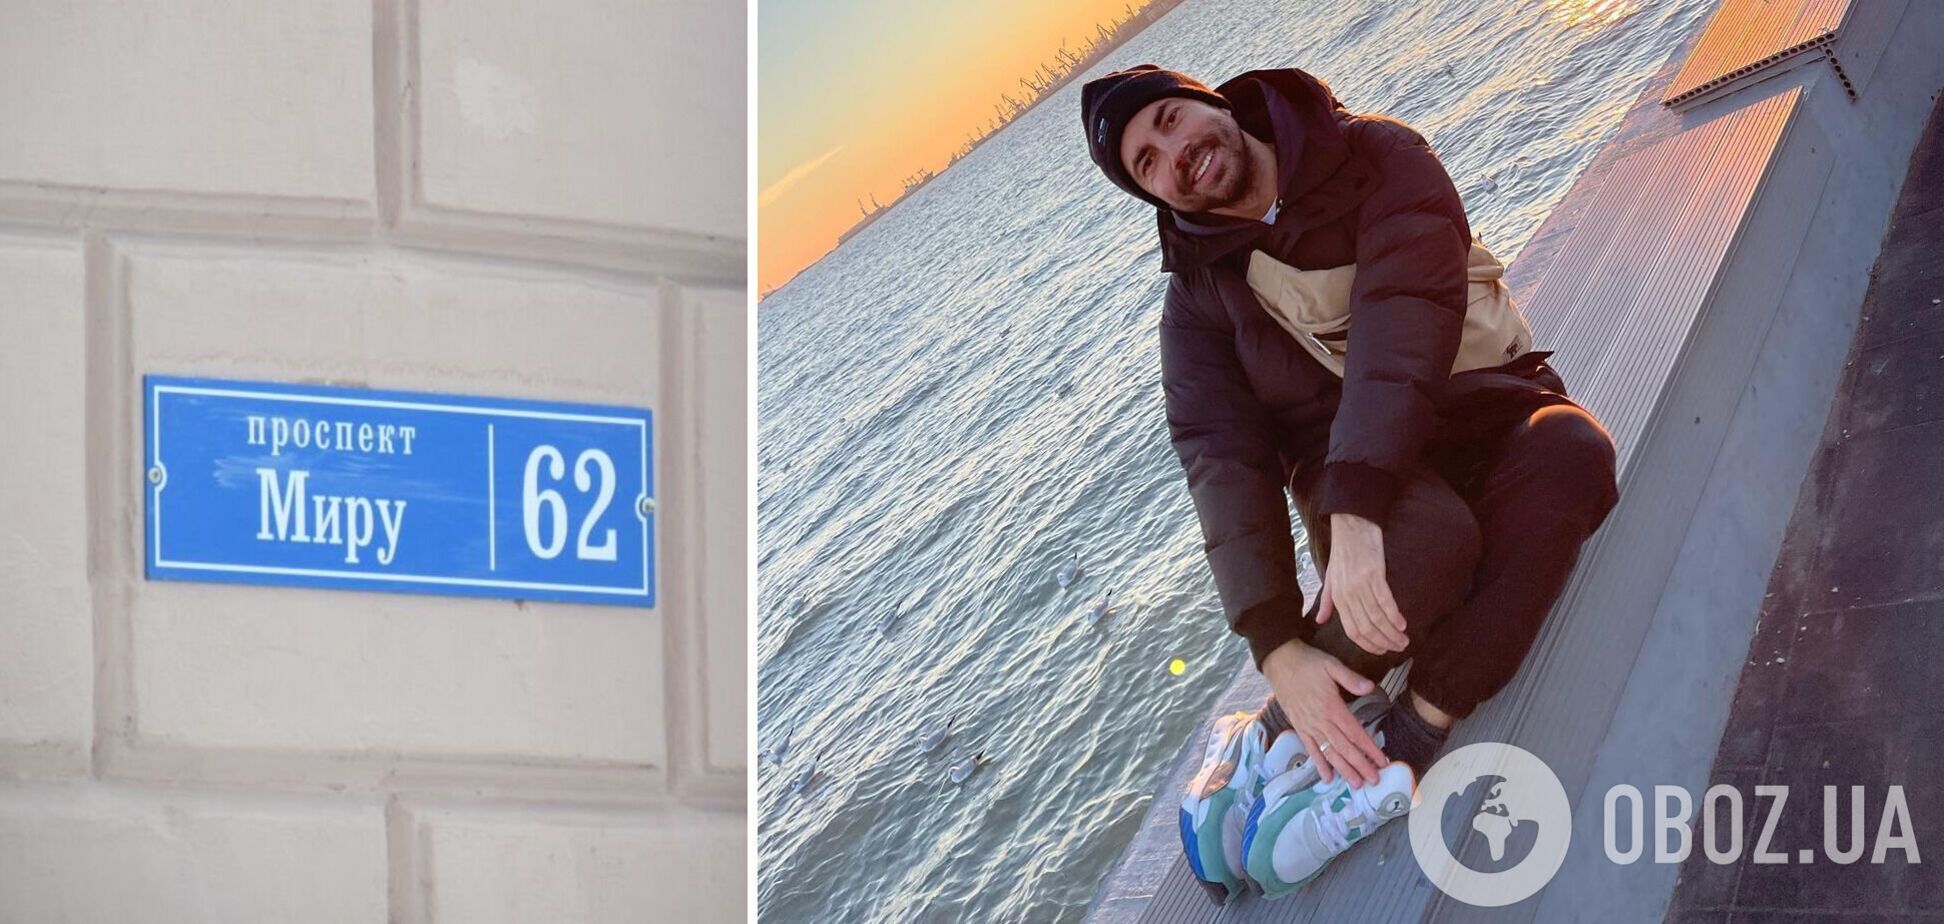 'Символично': Бедняков высмеял переименование проспекта Мира в оккупированном Мариуполе